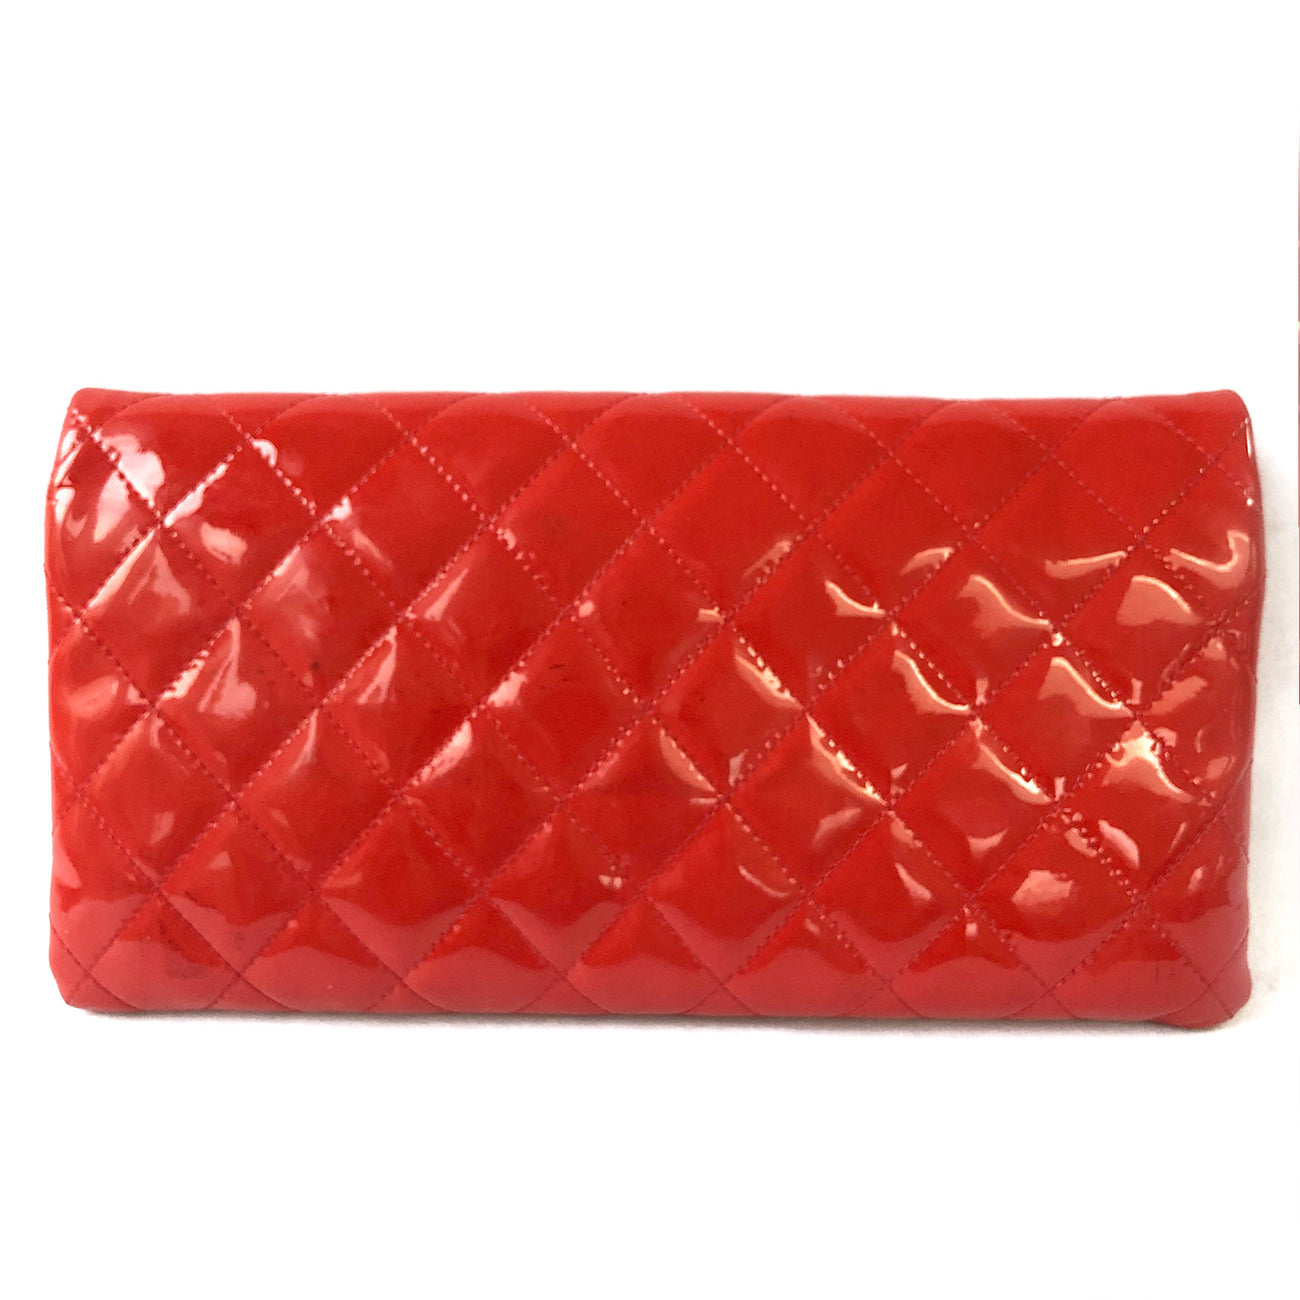 Yves Saint Laurent Red Patent Leather Belle De Jour Flap Clutch One Size